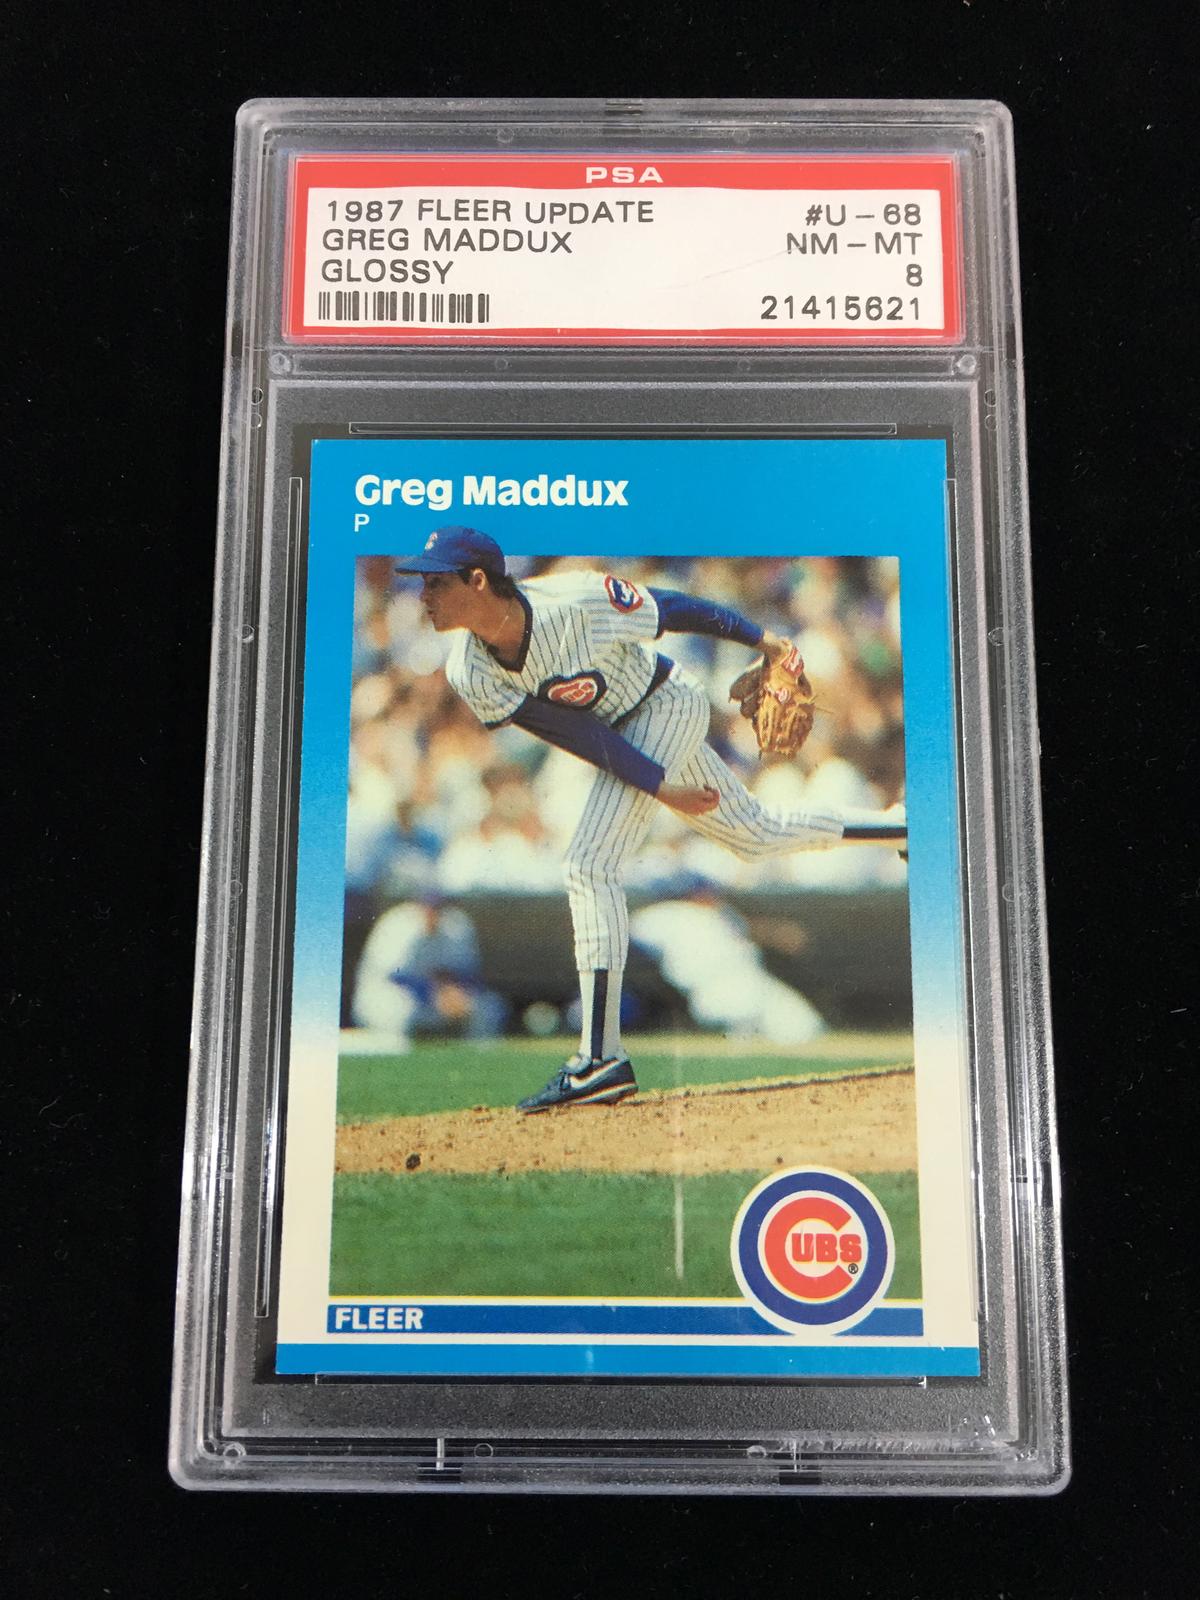 PSA Graded 1987 Fleer Update Glossy Greg Maddux Rookie Baseball Card - NMMT 8